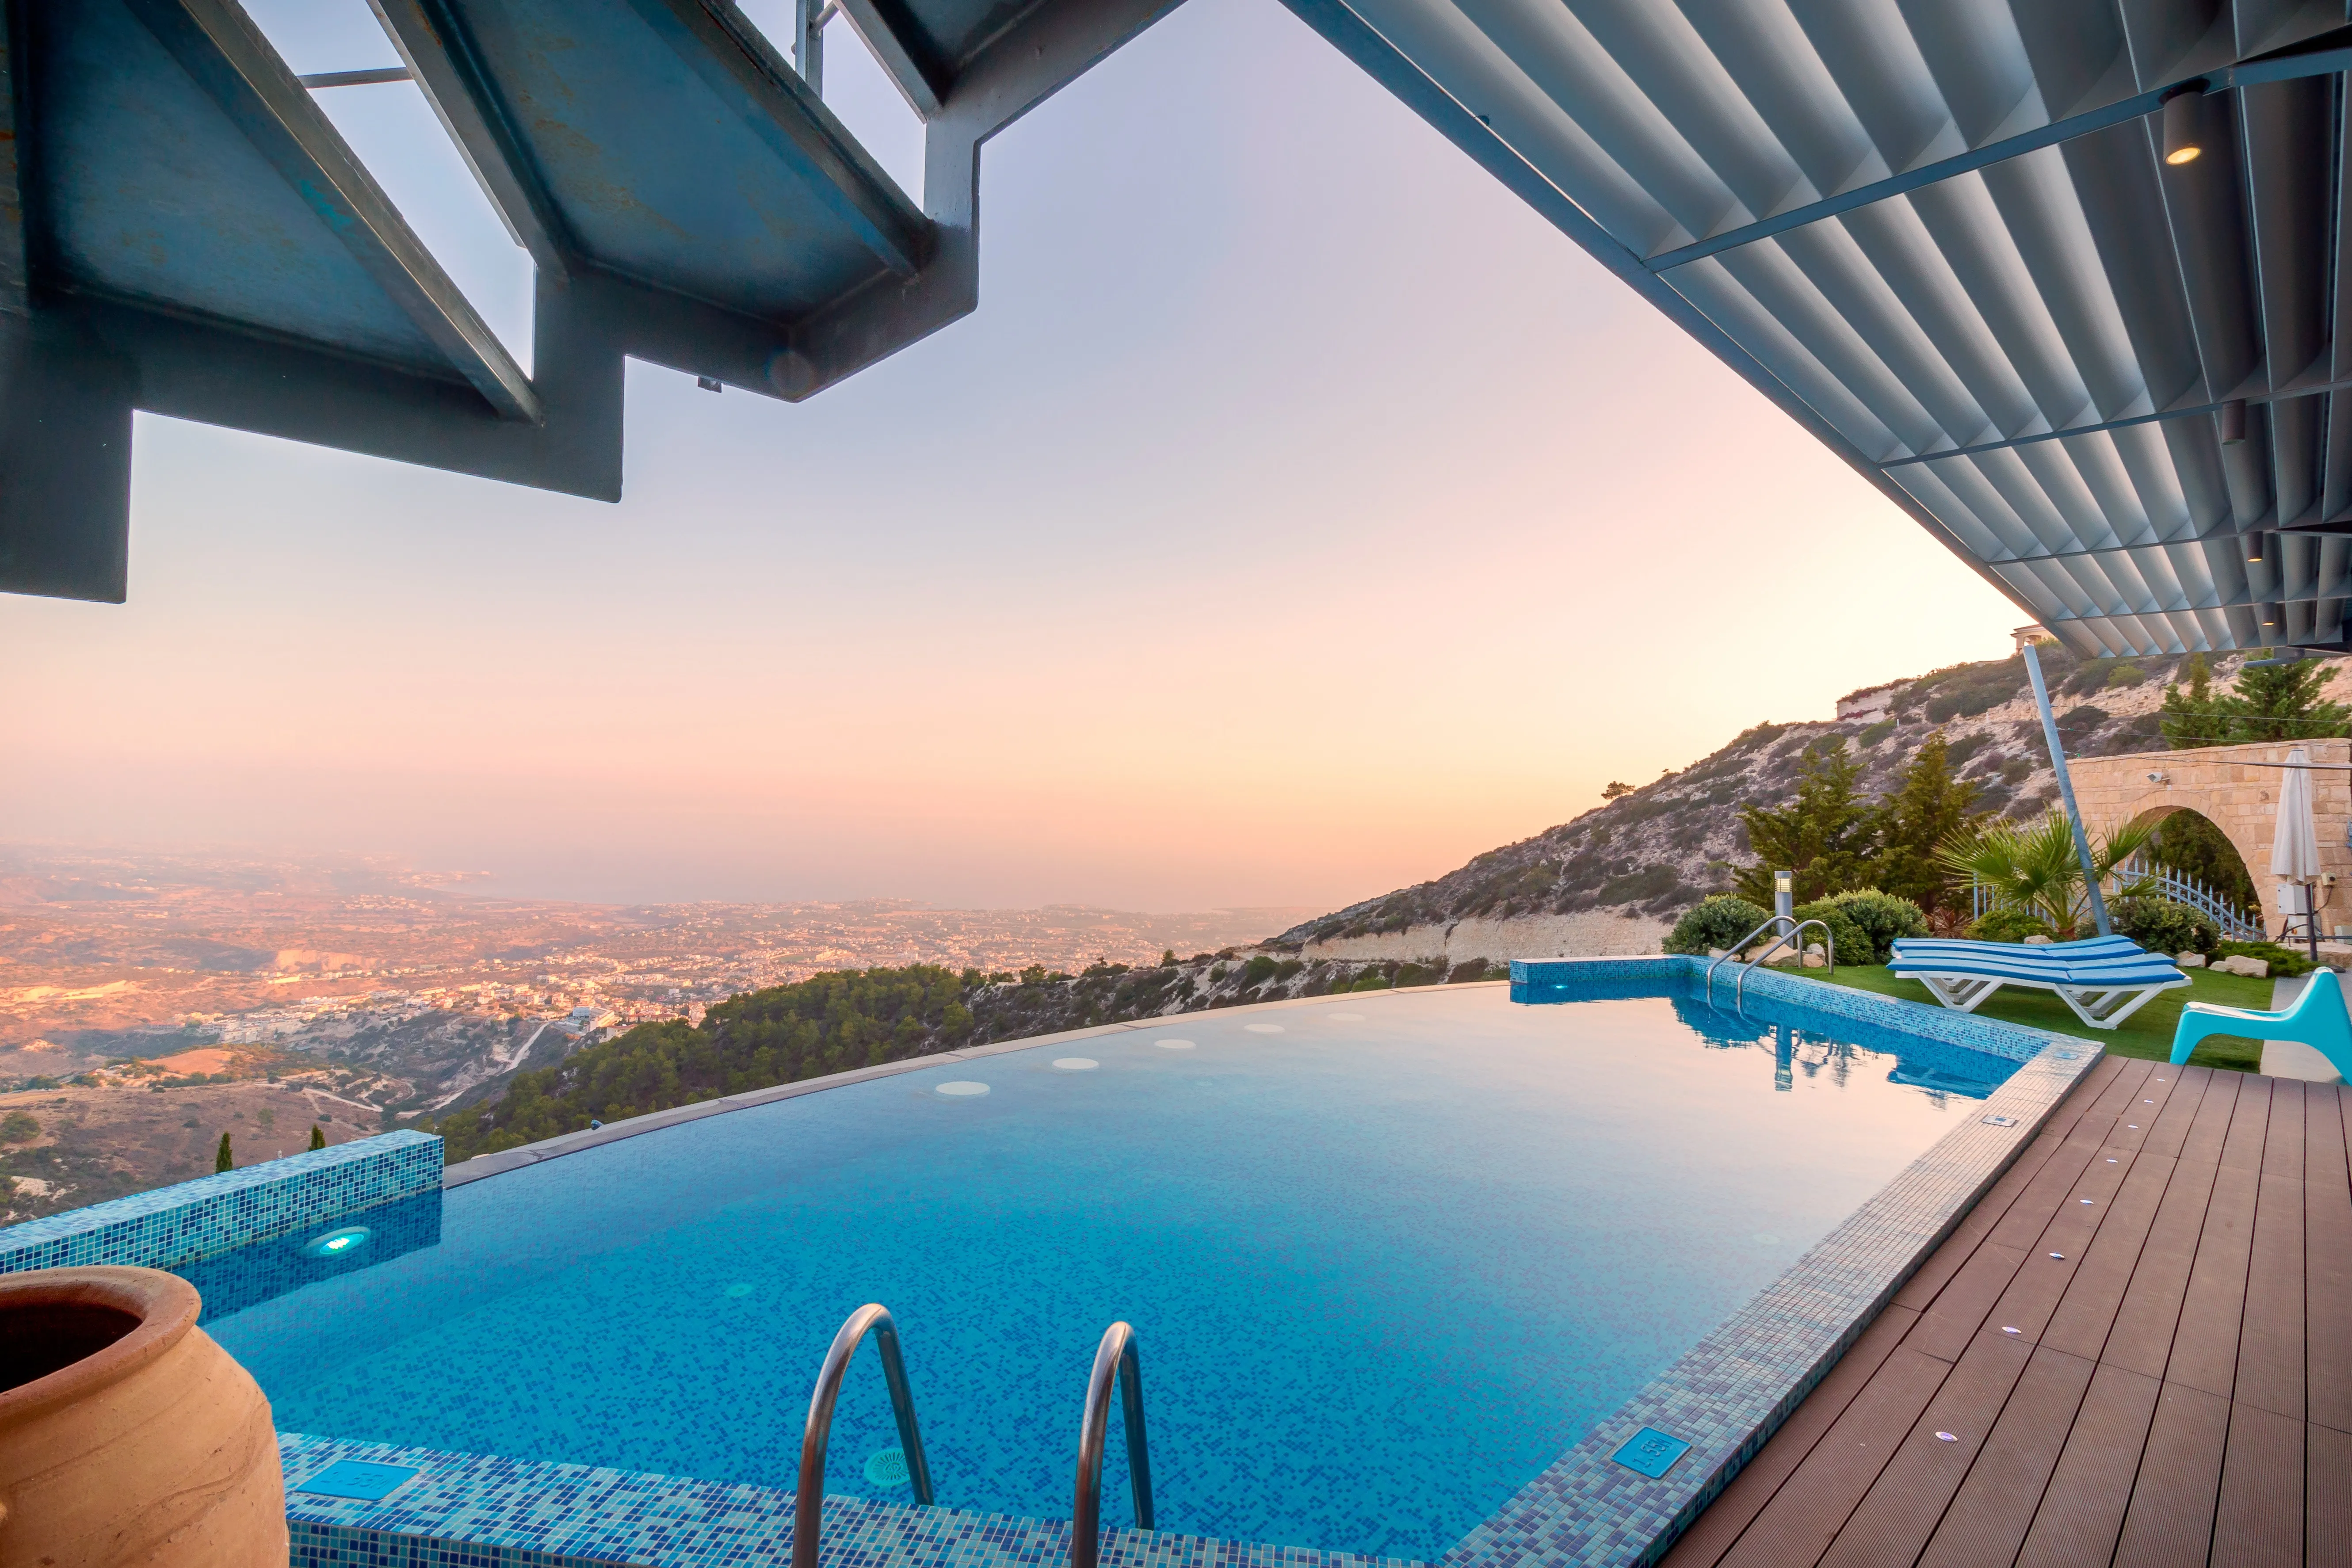 Antalya Kiralık Villa Fiyatları: Uygun Fiyata Tatilin Keyfini Çıkarın